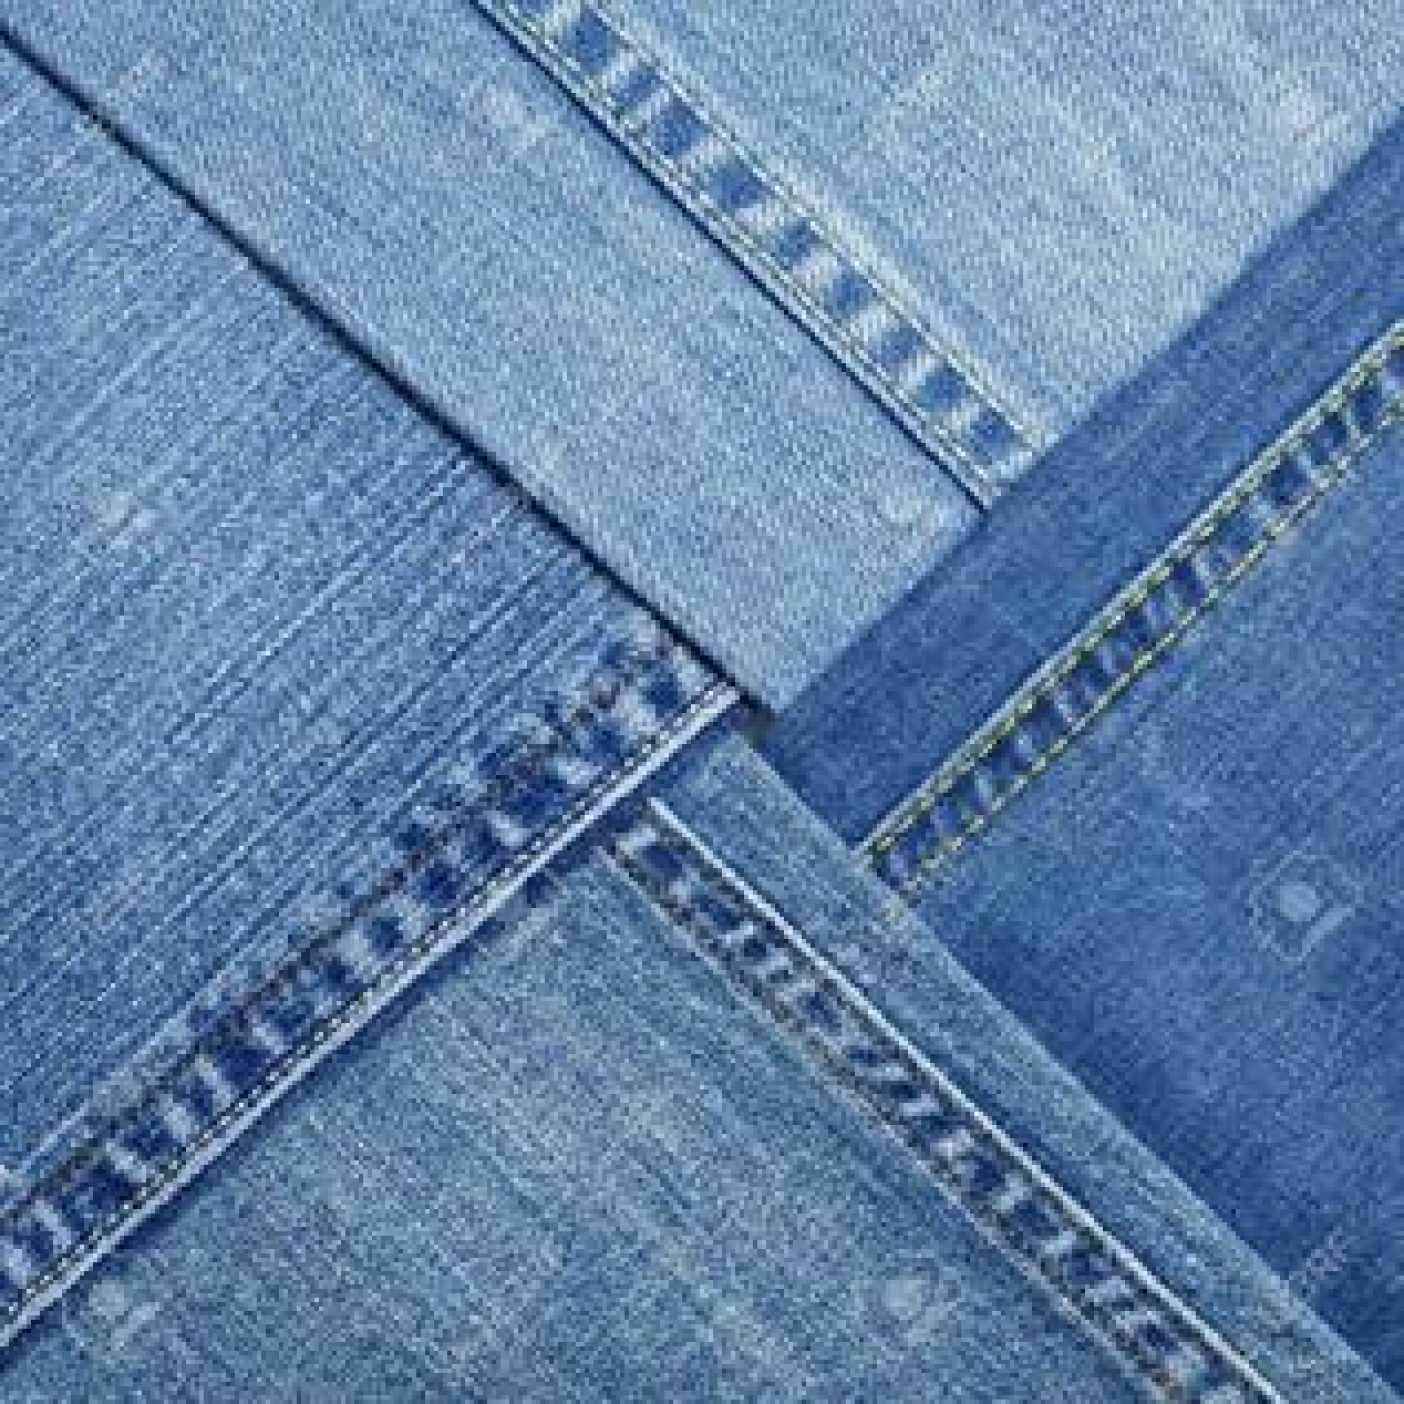 Текстура джинсов. Lagarto Denim джинсы. Джинсовая ткань. Джинсовая ткань деним. Ткань под джинсу.